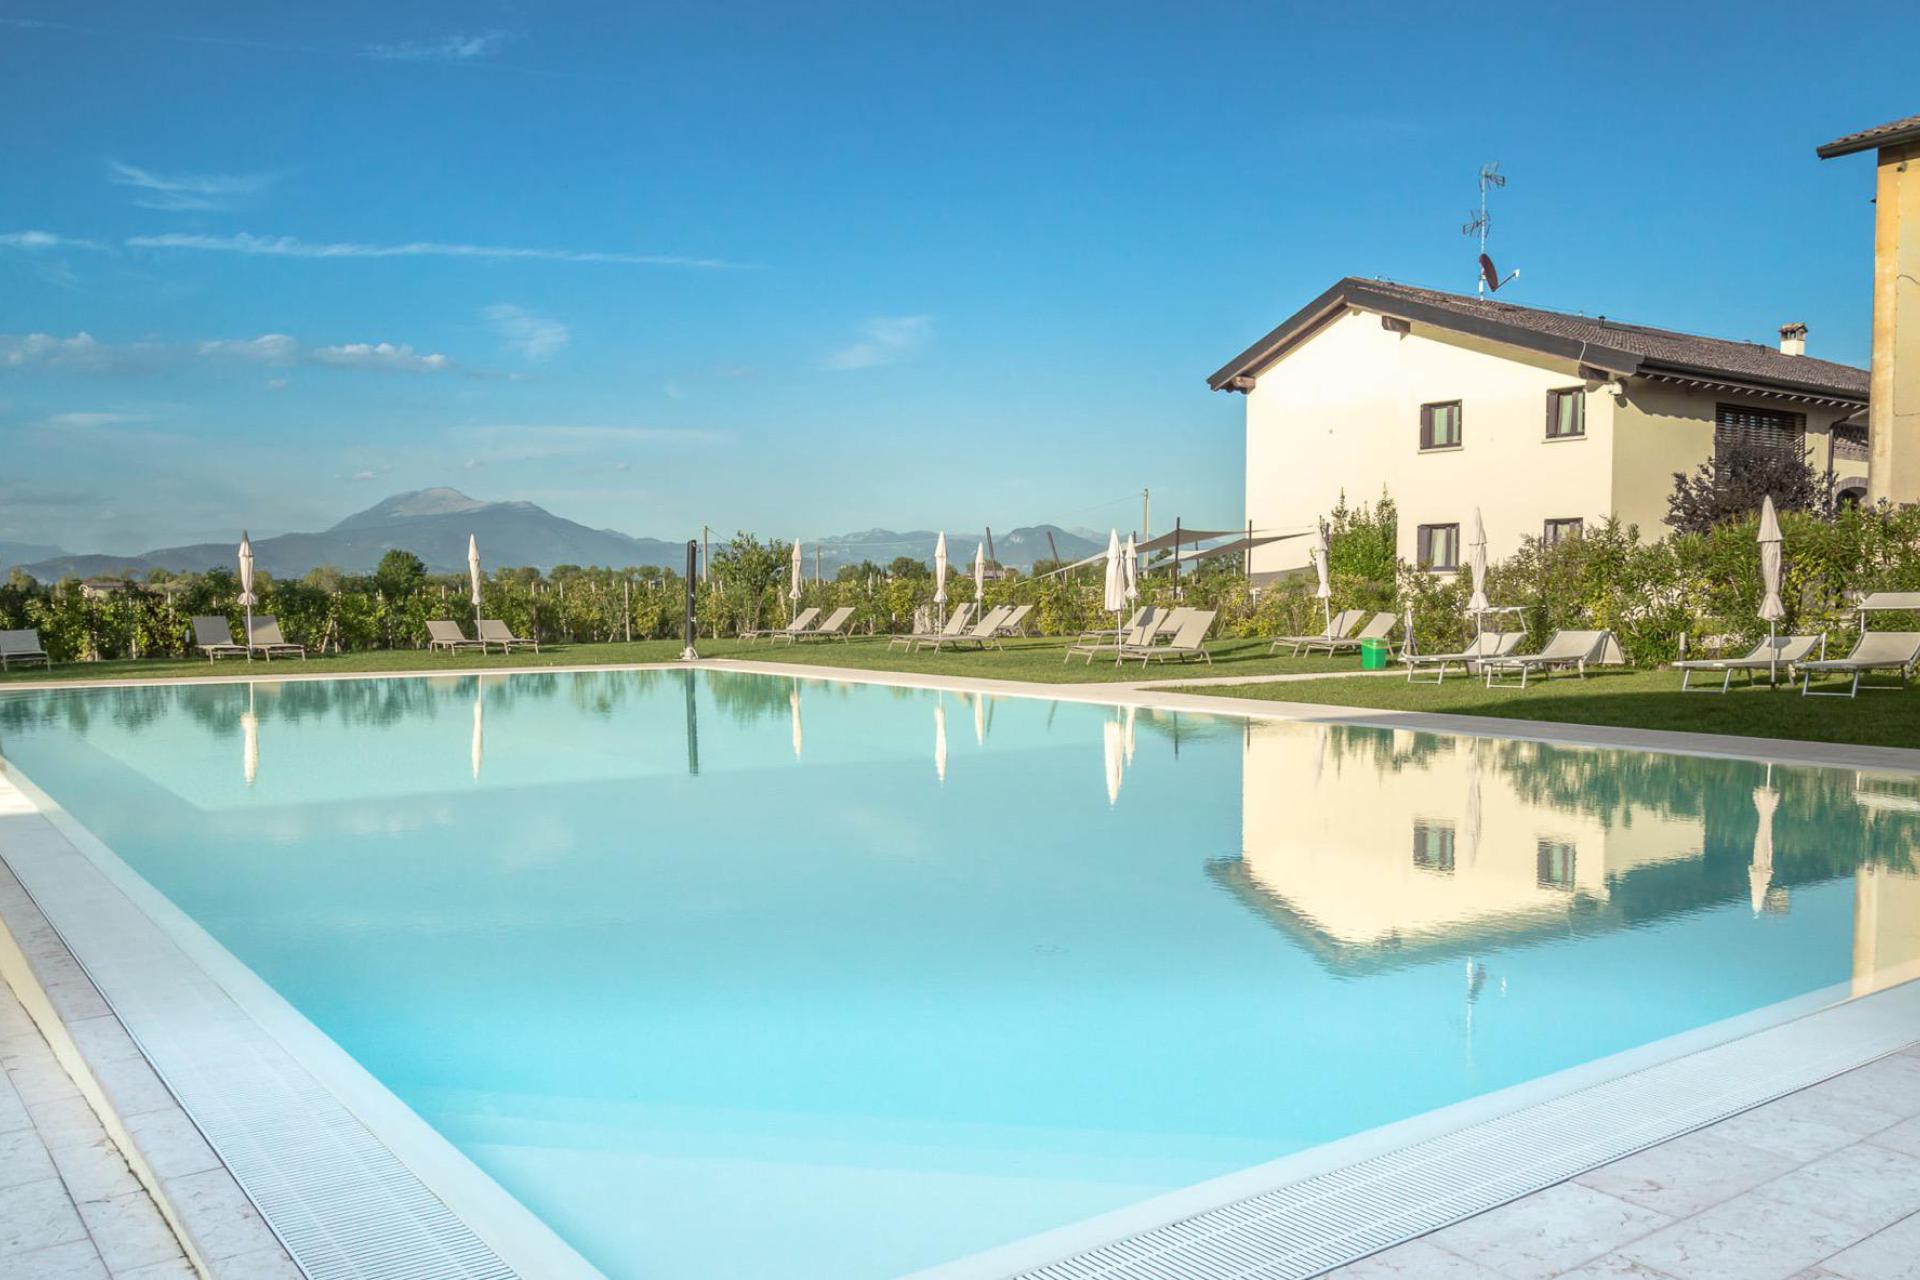 Agriturismo mit Ferienwohnungen Gardasee, mit großem Pool, ideal für Familien